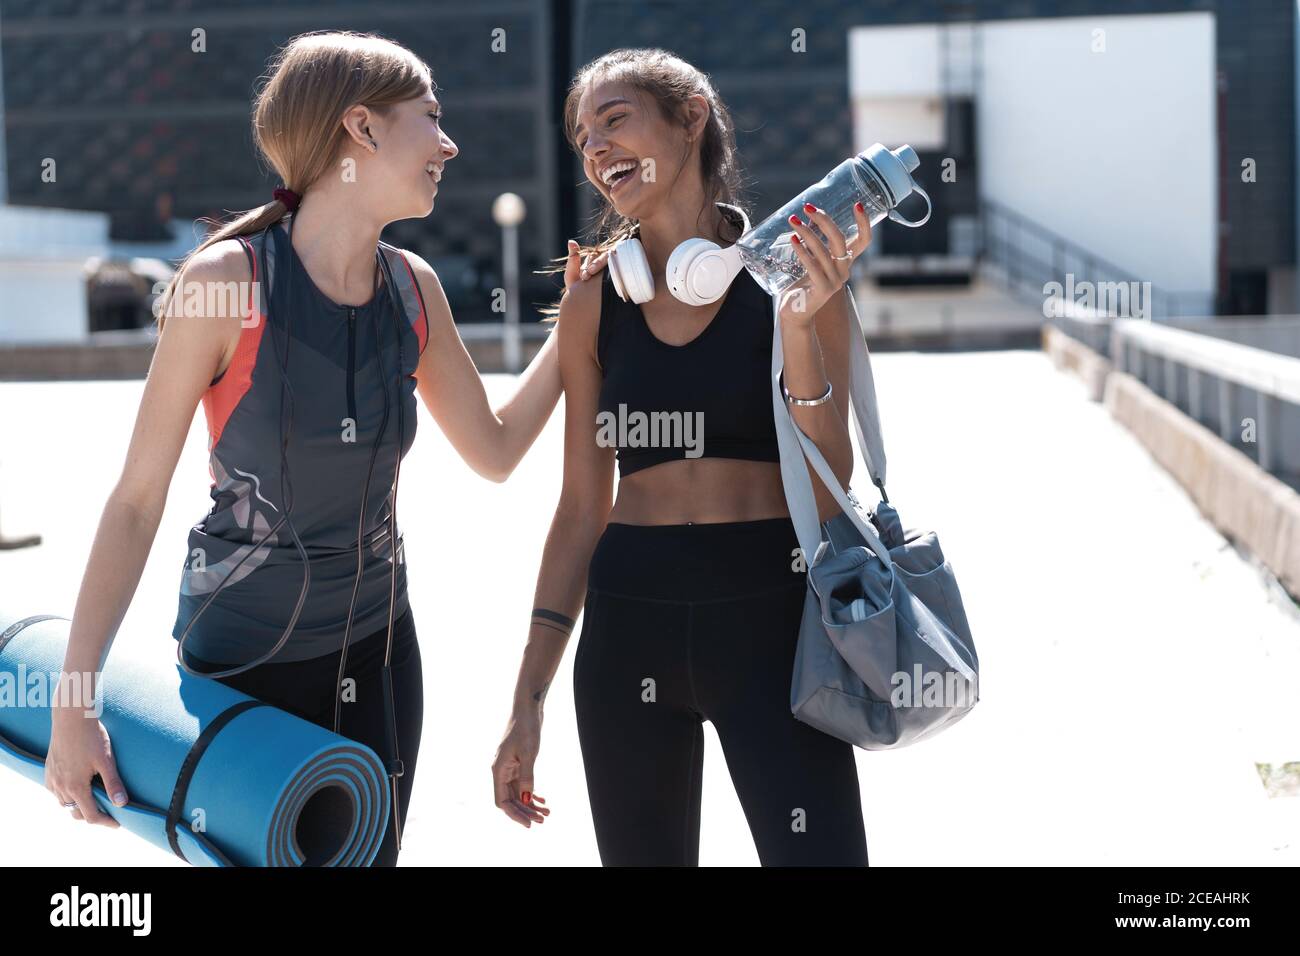 Deux jeunes femmes athlétiques souriantes qui marchent ensemble à l'extérieur après un entraînement sportif, qui parlent et s'embrasent les unes les autres. Banque D'Images